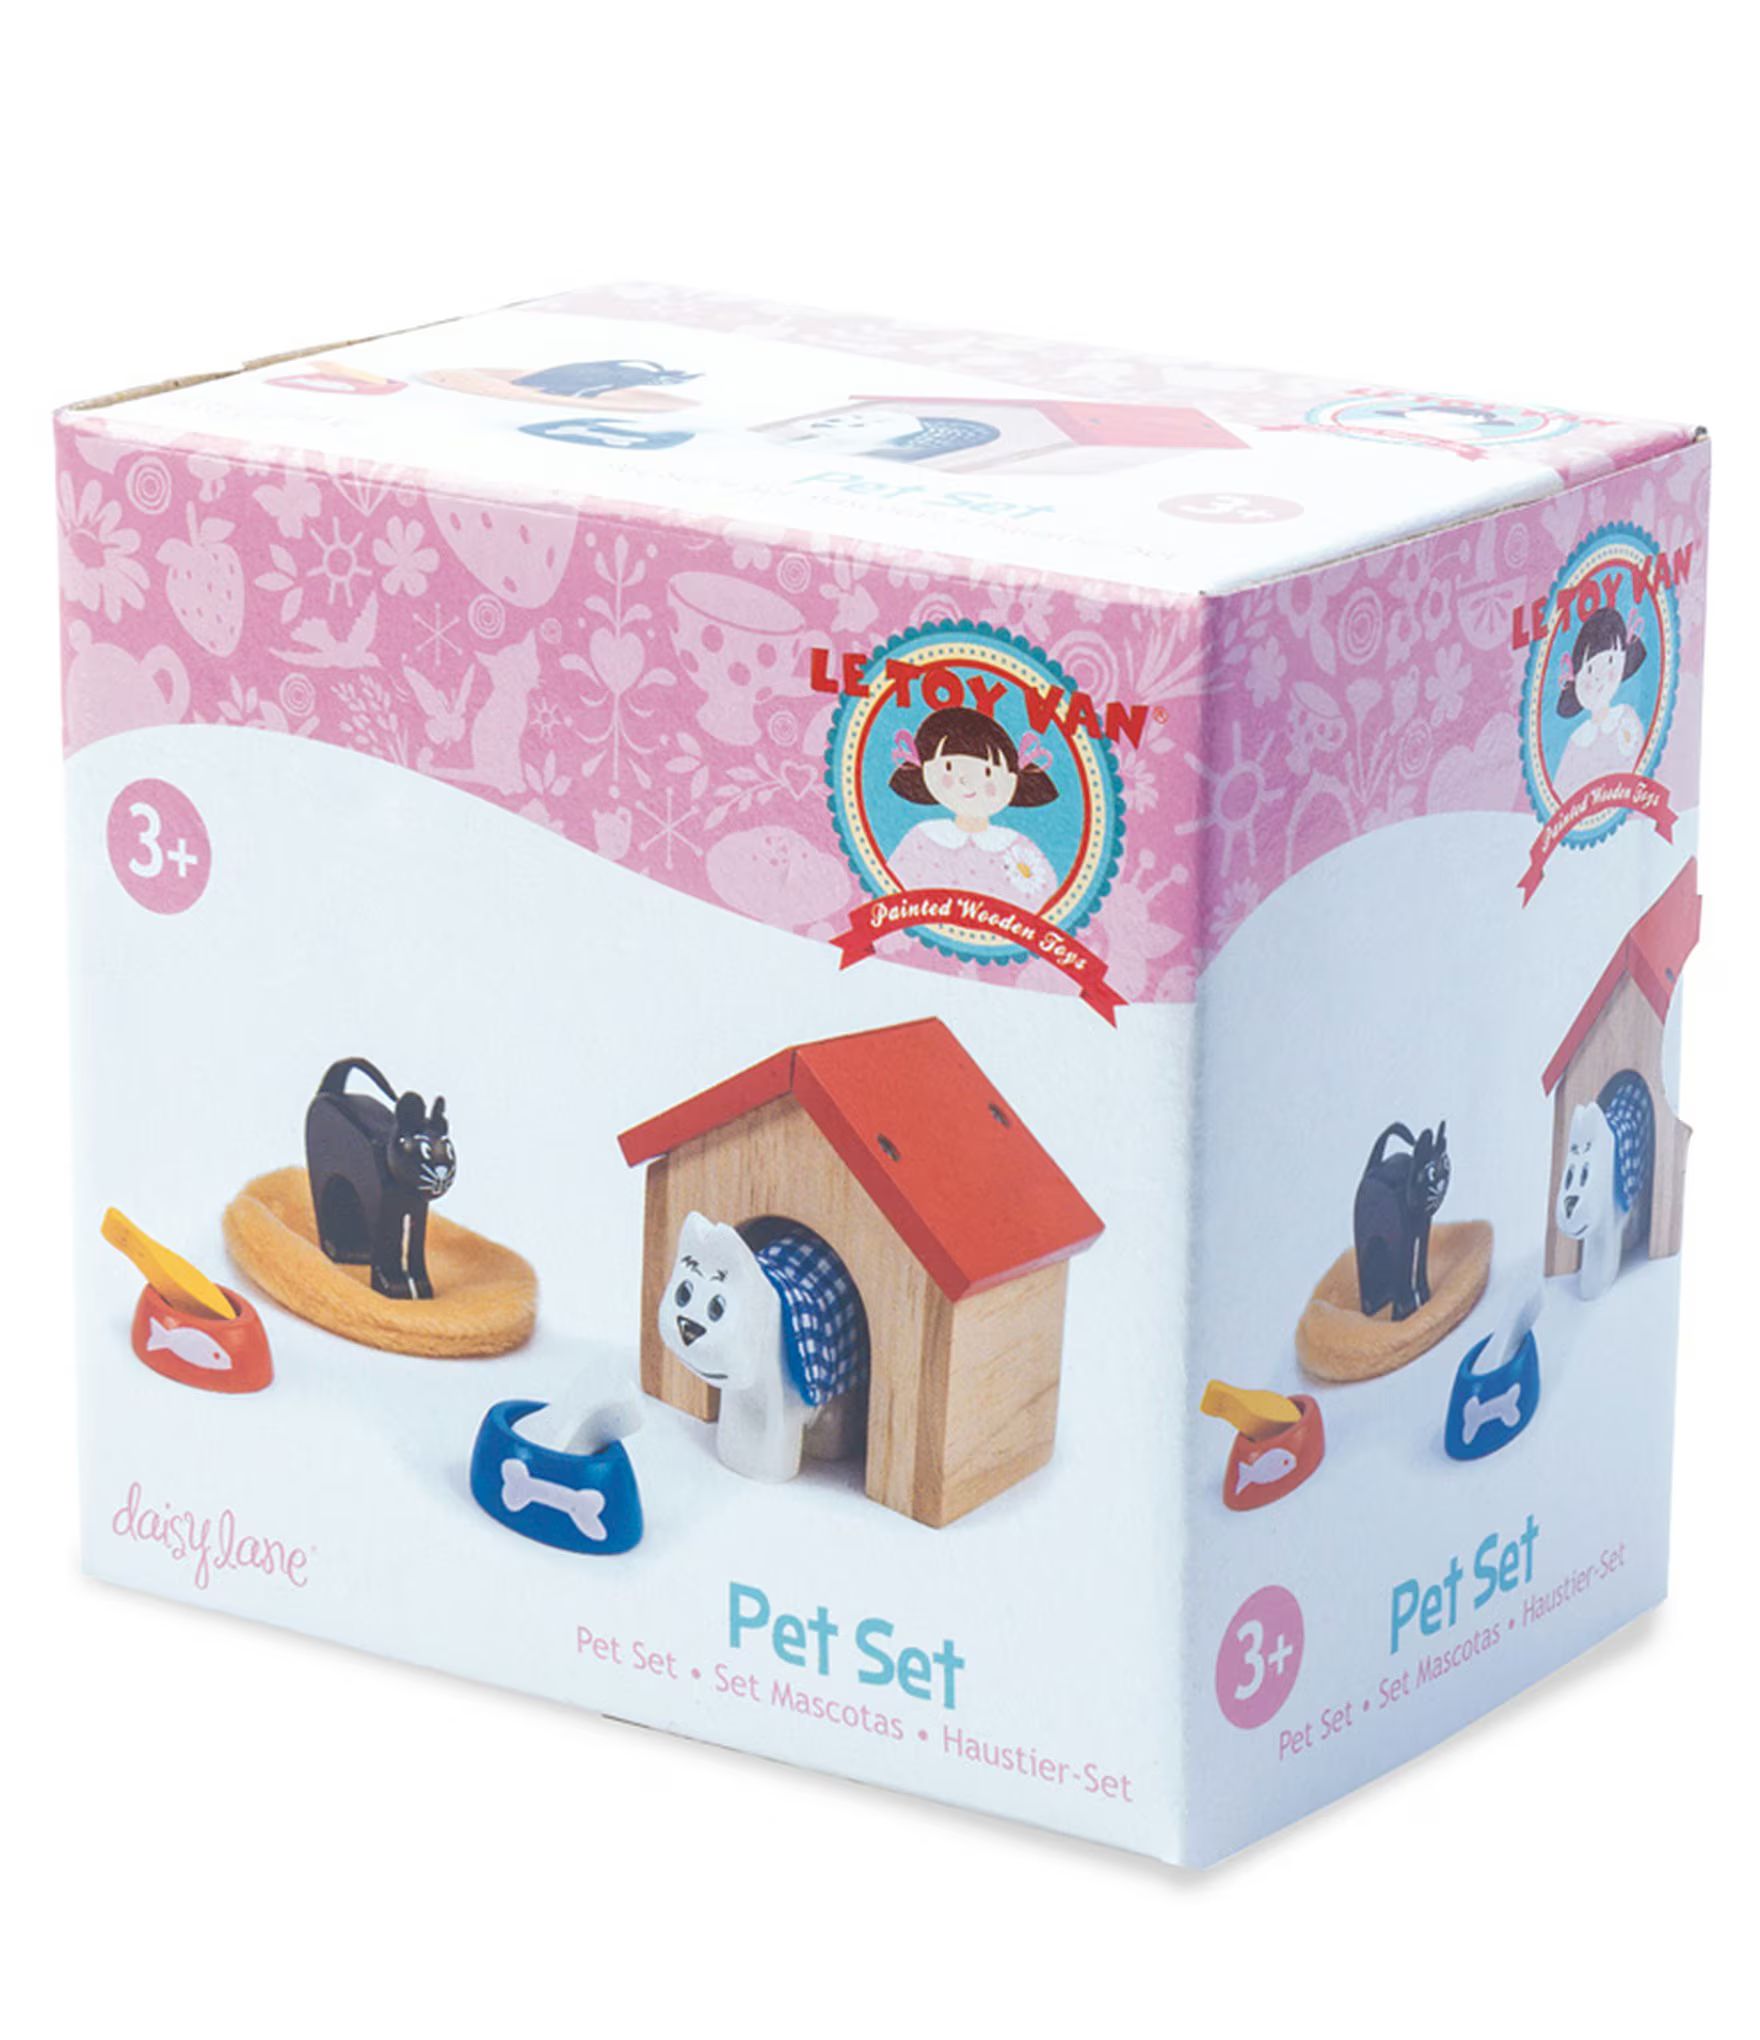 Daisylane Wooden Pet Set for Doll House | Dillards